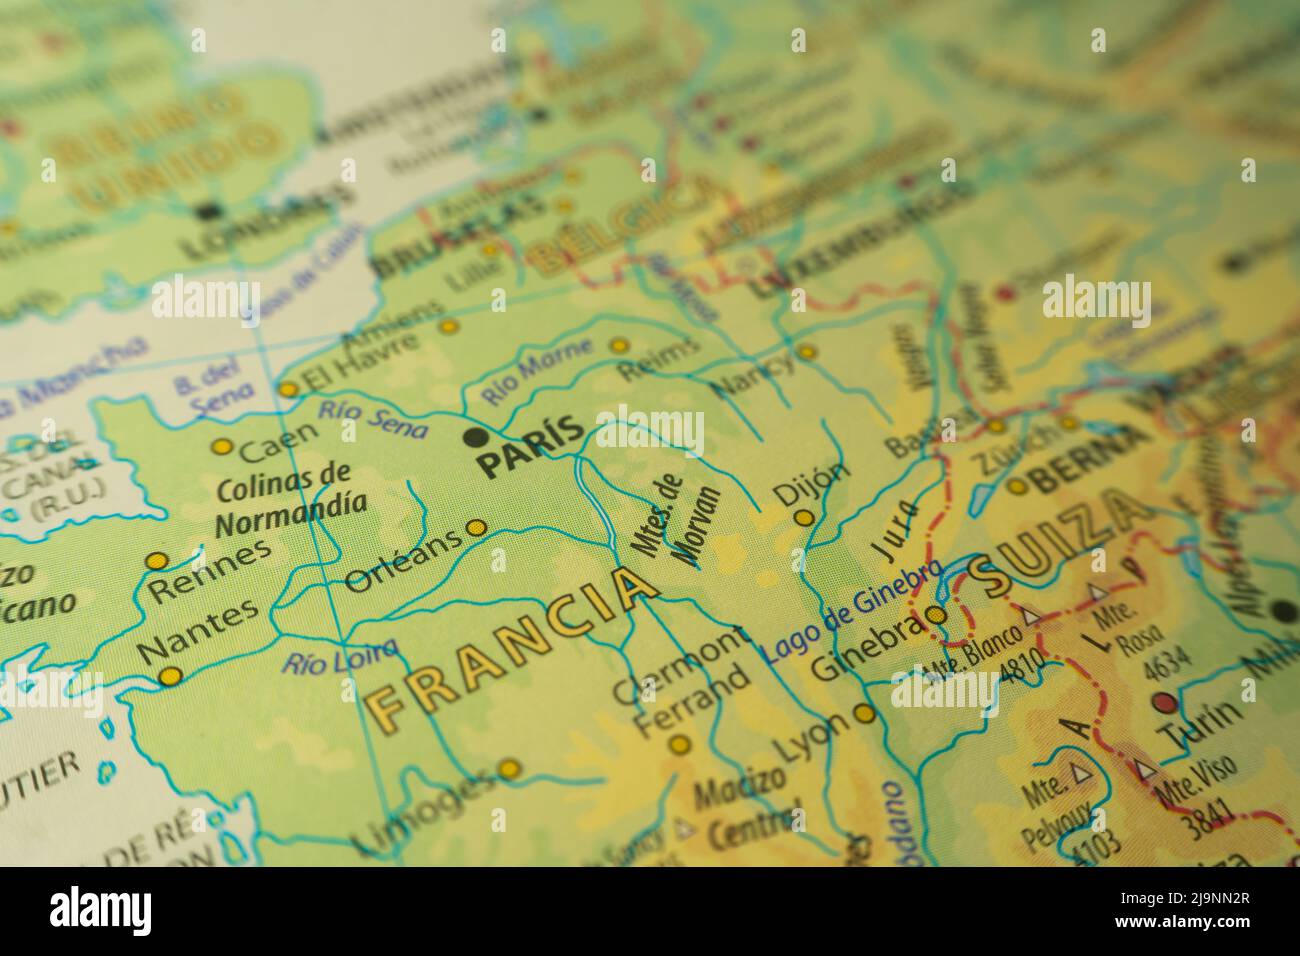 Orographische Karte der zentralen Region Frankreichs. Mit Referenzen in englischer Sprache. Konzept der Kartographie, Reisen, Tourismus, Geographie. Differenzieller Ansatz Stockfoto